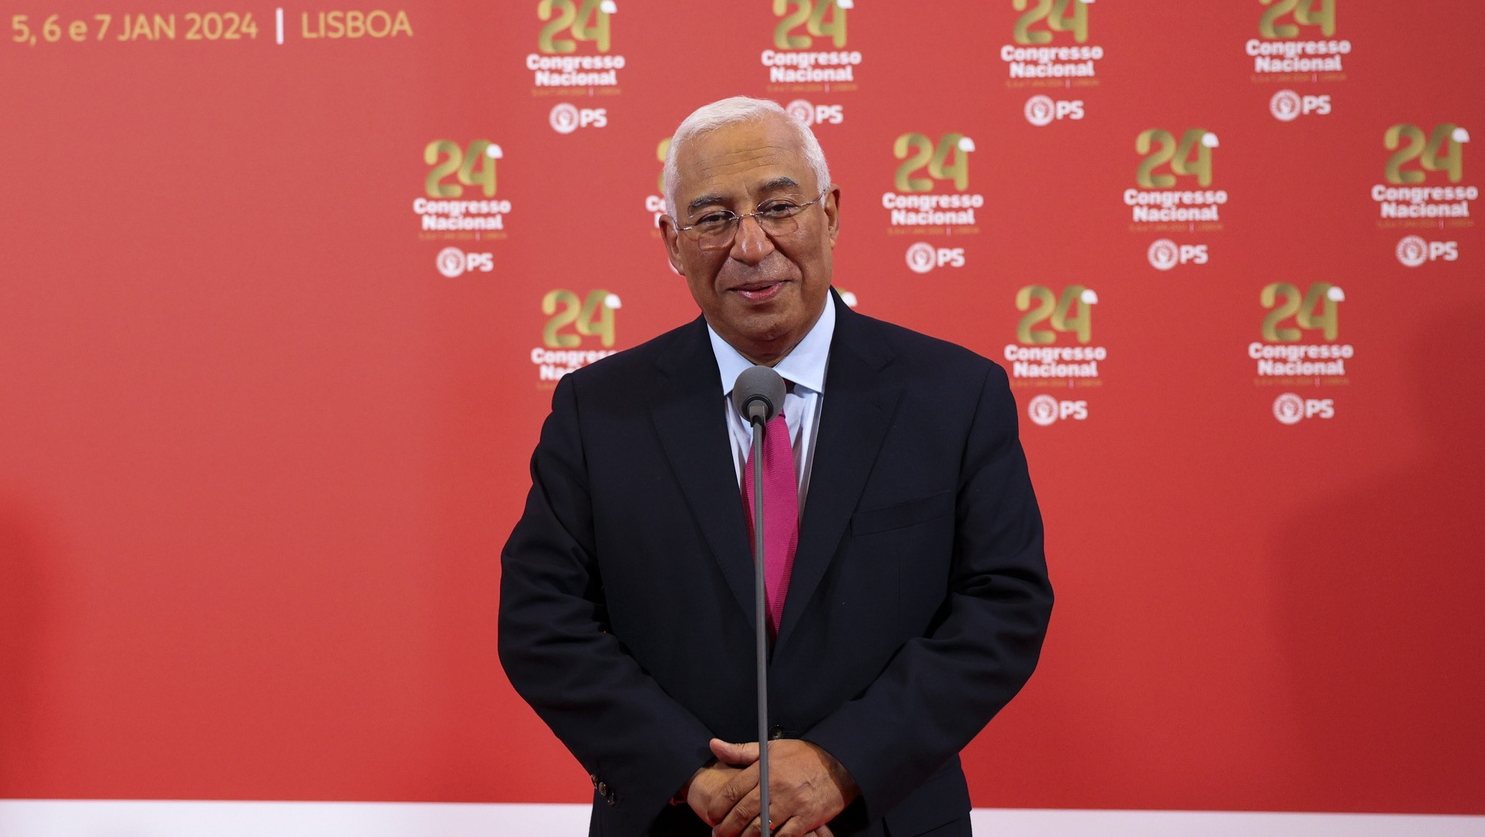 O primeiro-ministro, António Costa, intervém durante o XXIV Congresso Nacional do Partido Socialista (PS), na Feira Internacional de Lisboa, 05 de janeiro de 2024. ANTÓNIO COTRIM/LUSA